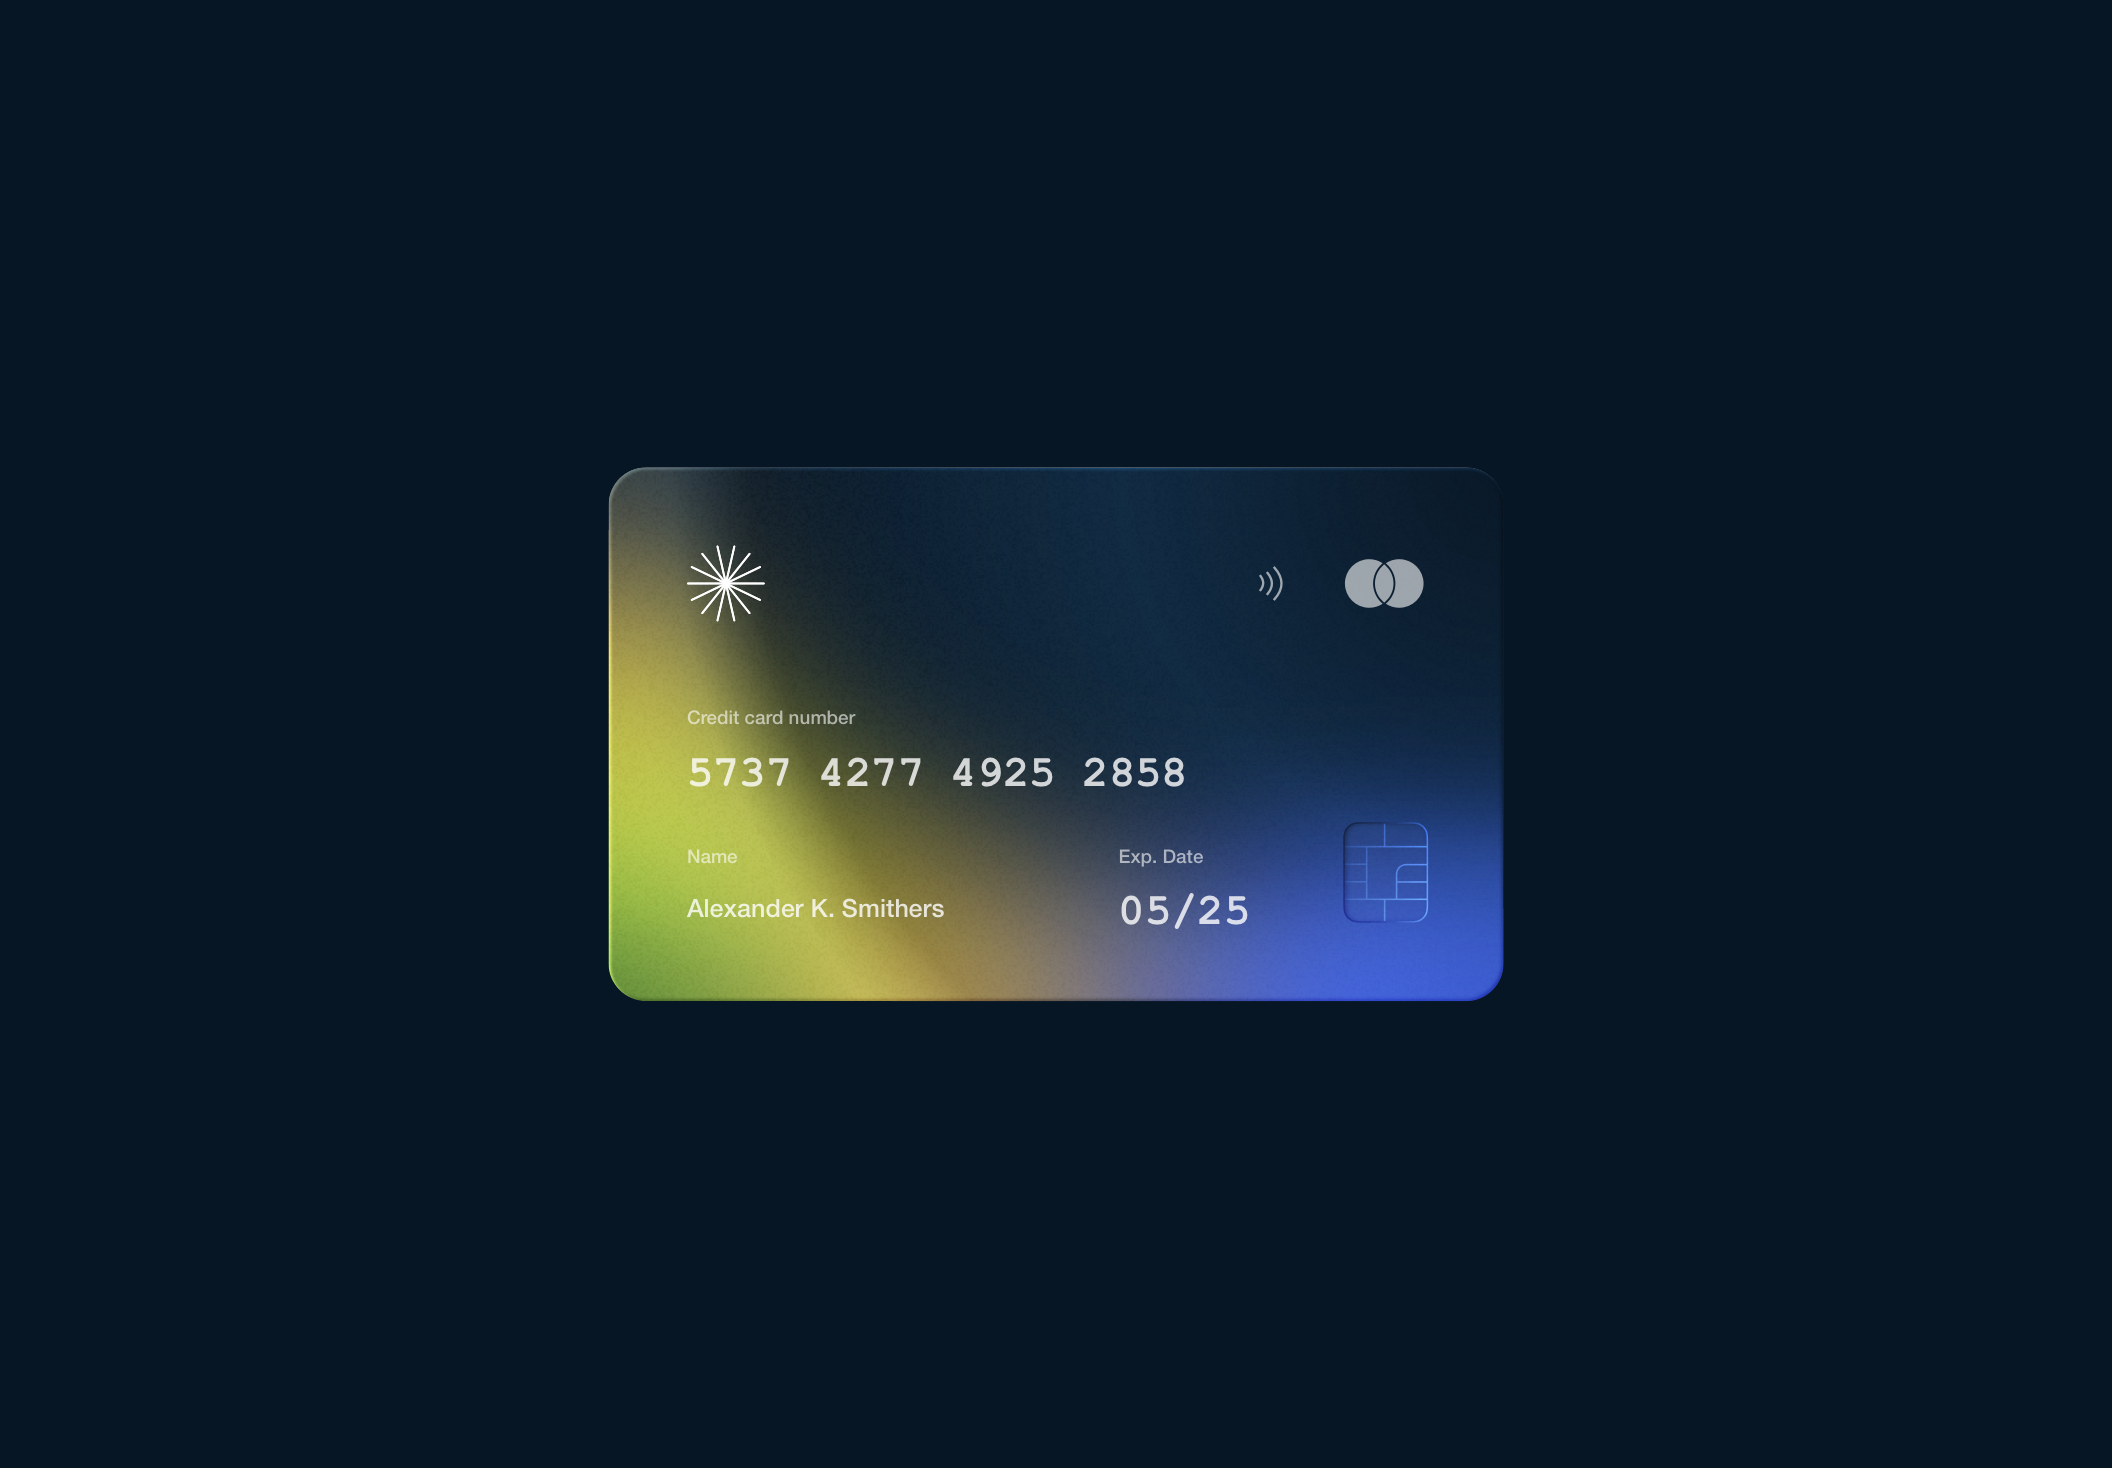 未来派模糊颗粒感磨砂渐变银行卡信用卡样机模板 3D Meta